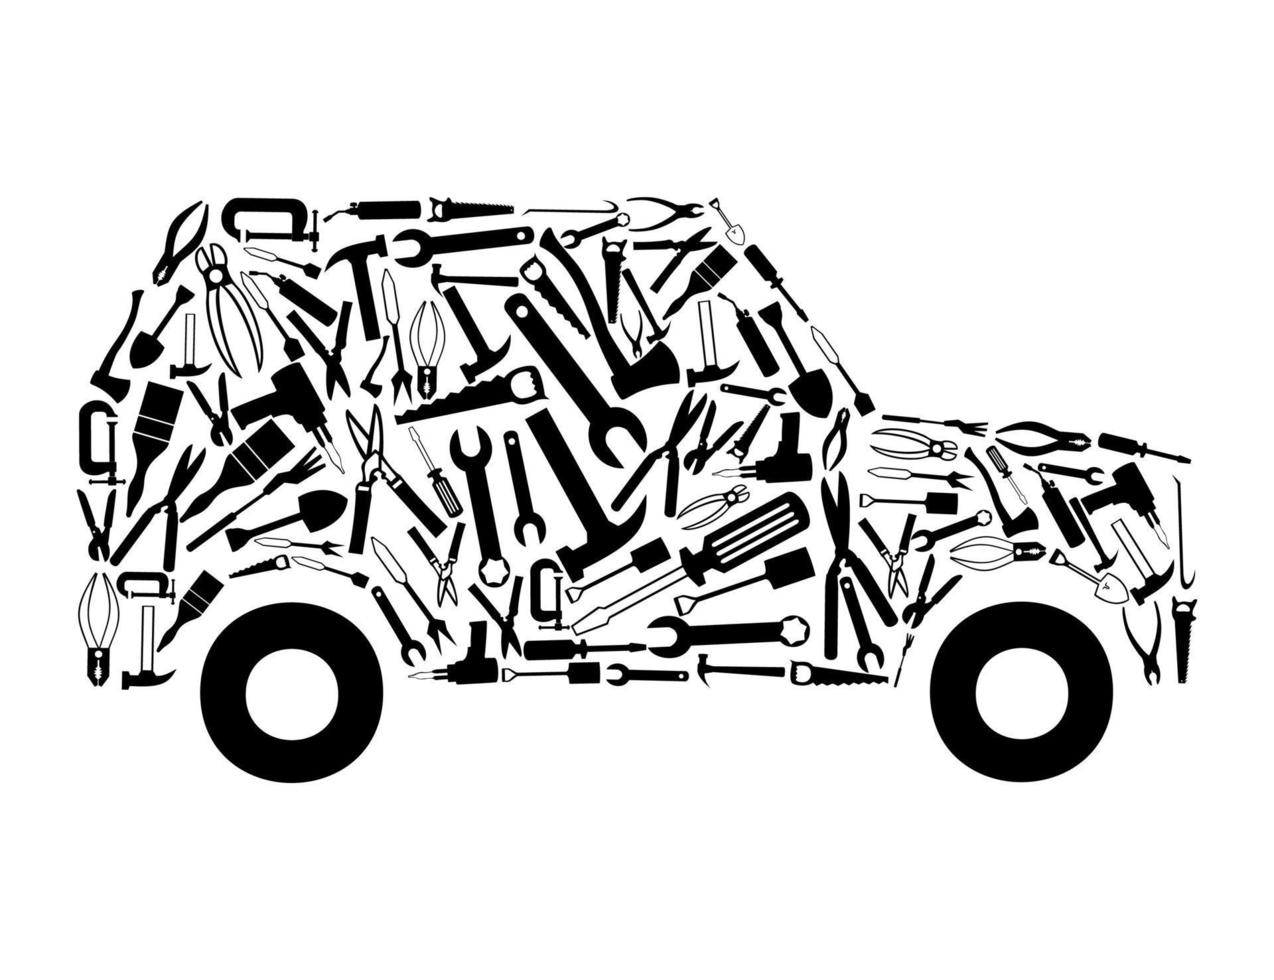 de auto verzameld van hulpmiddelen. een vector illustratie